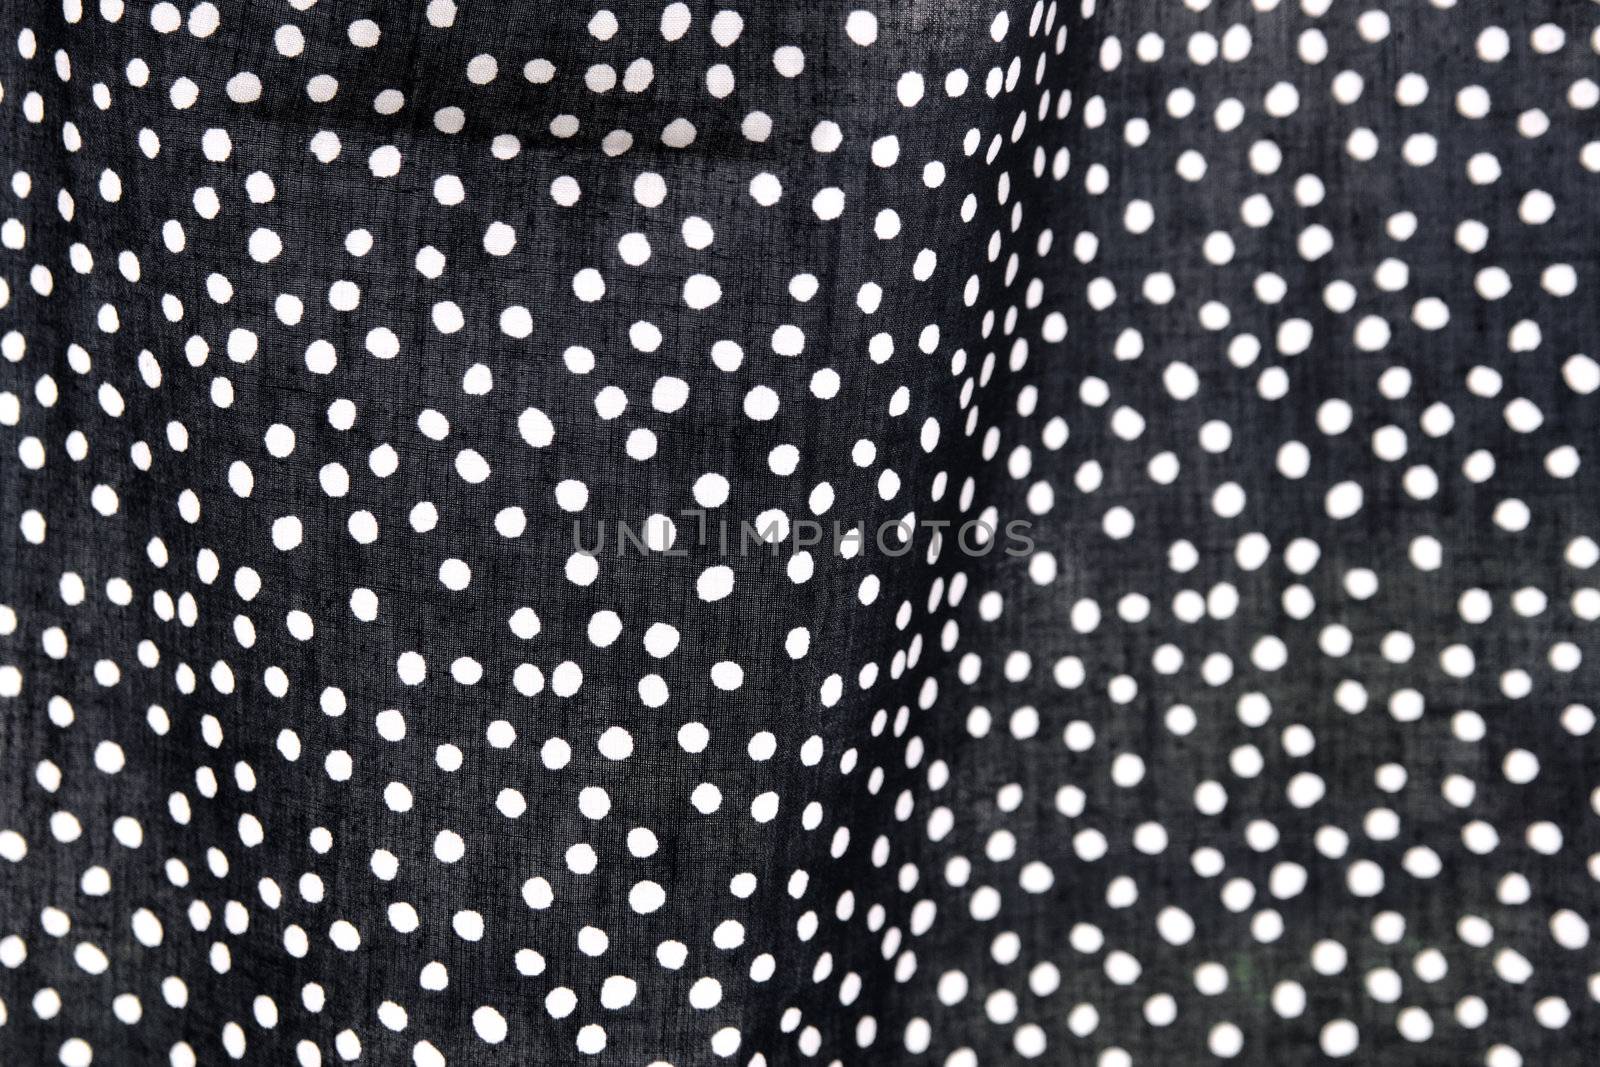 polka dot background 1 by nebari